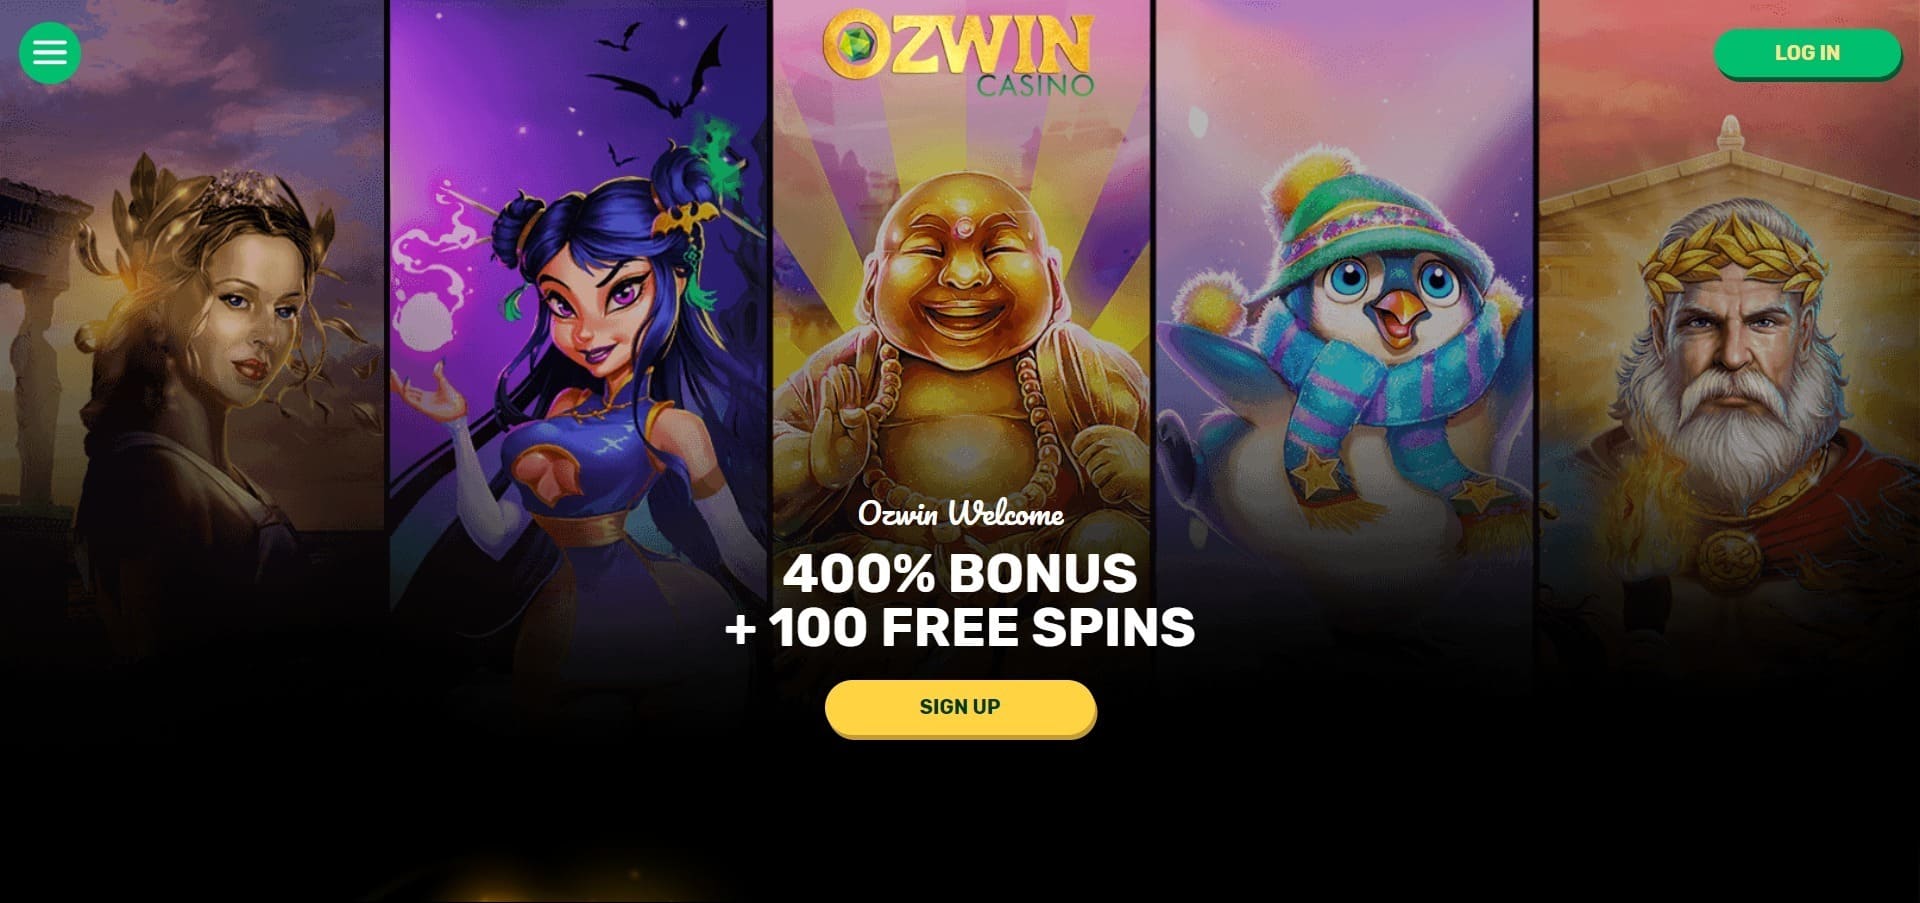 Ozwin Casino'nun resmi web sitesi